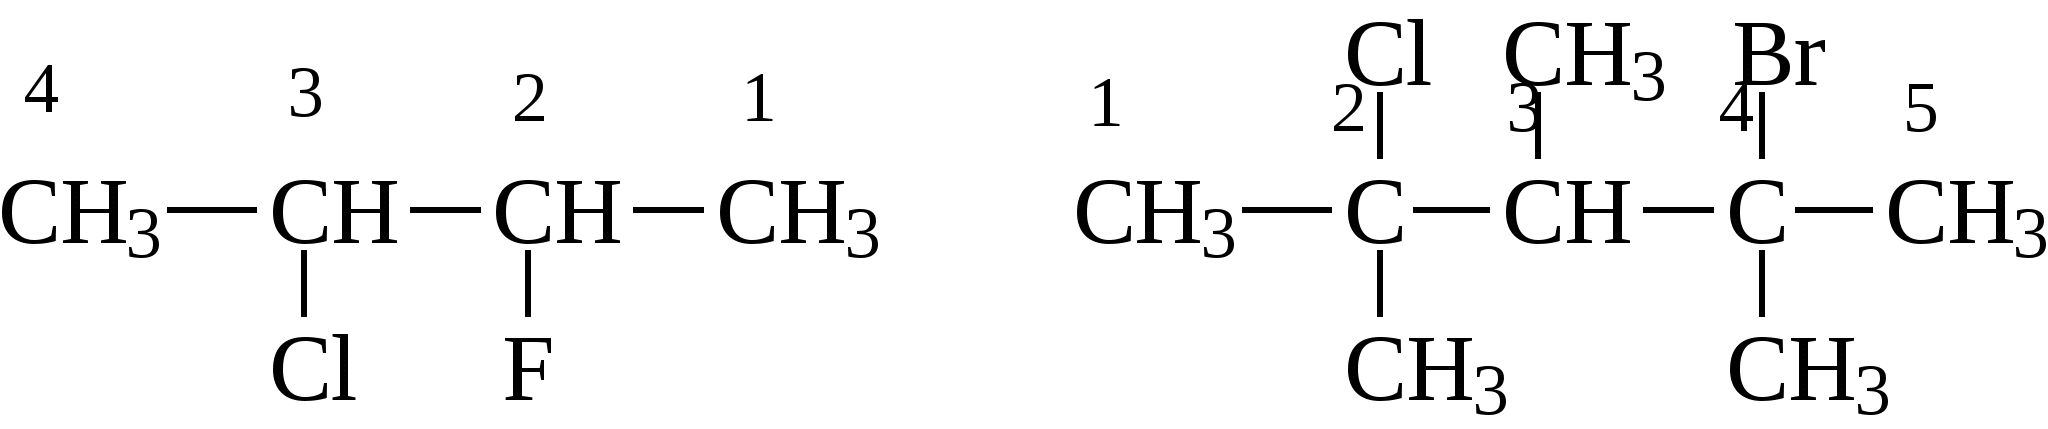 1 метил бутан. 2 3 Хлорбутан. 2 Метил 1 хлорбутан. 2 Метил 3 хлорбутан. 3-Хлорбутана.